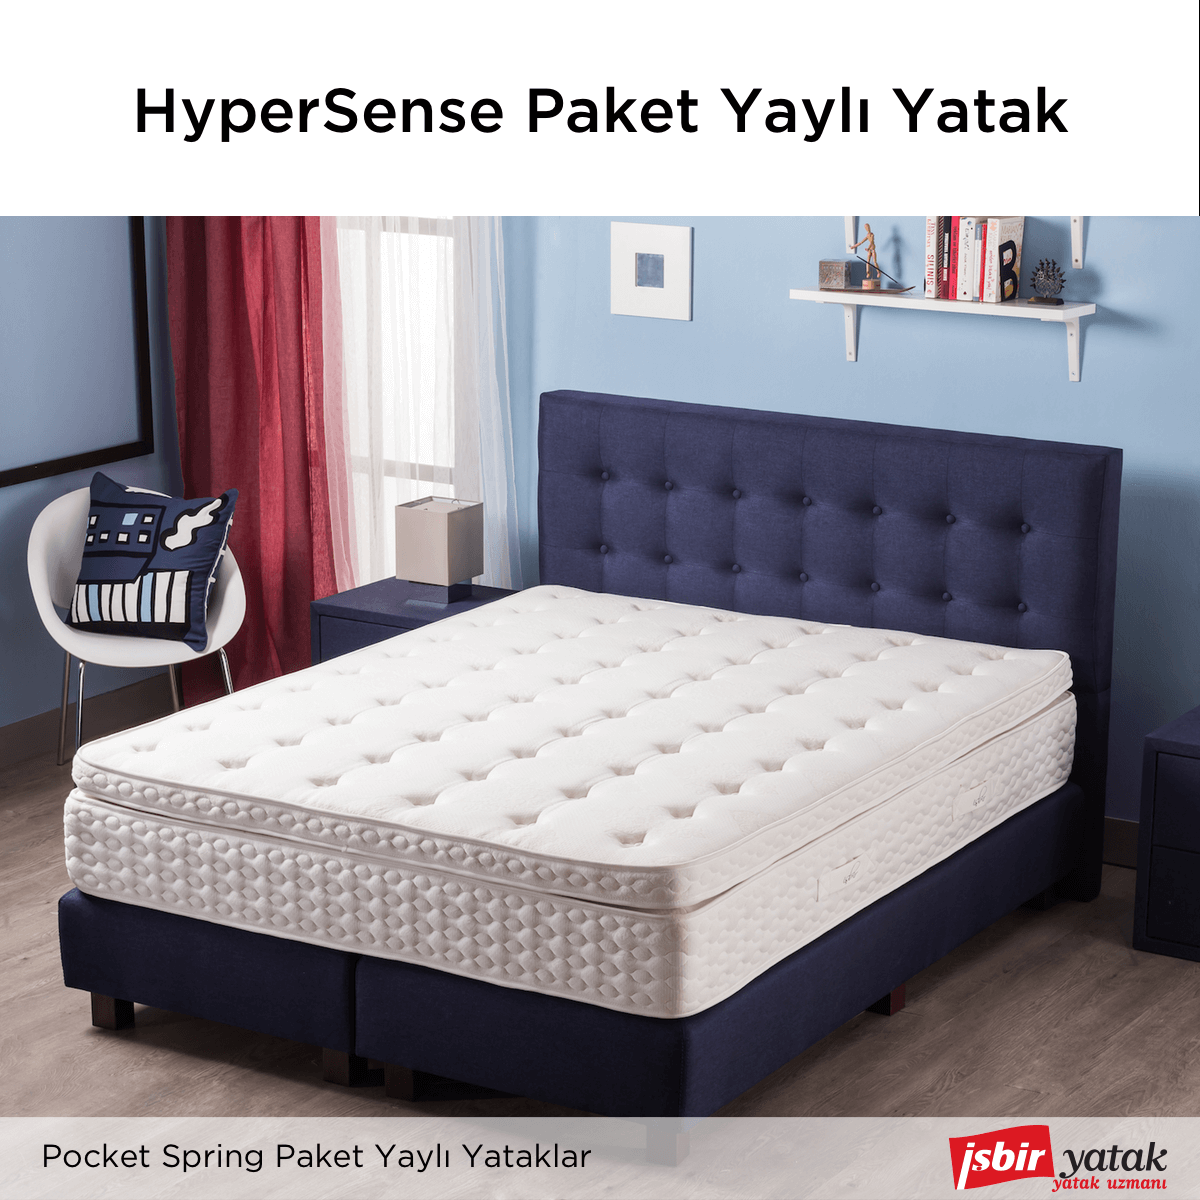 #PocketSpring paket yaylı yatak grubumuzun en yeni modeli, #HyperSense ile tanışın! isbry.tk/hypersense